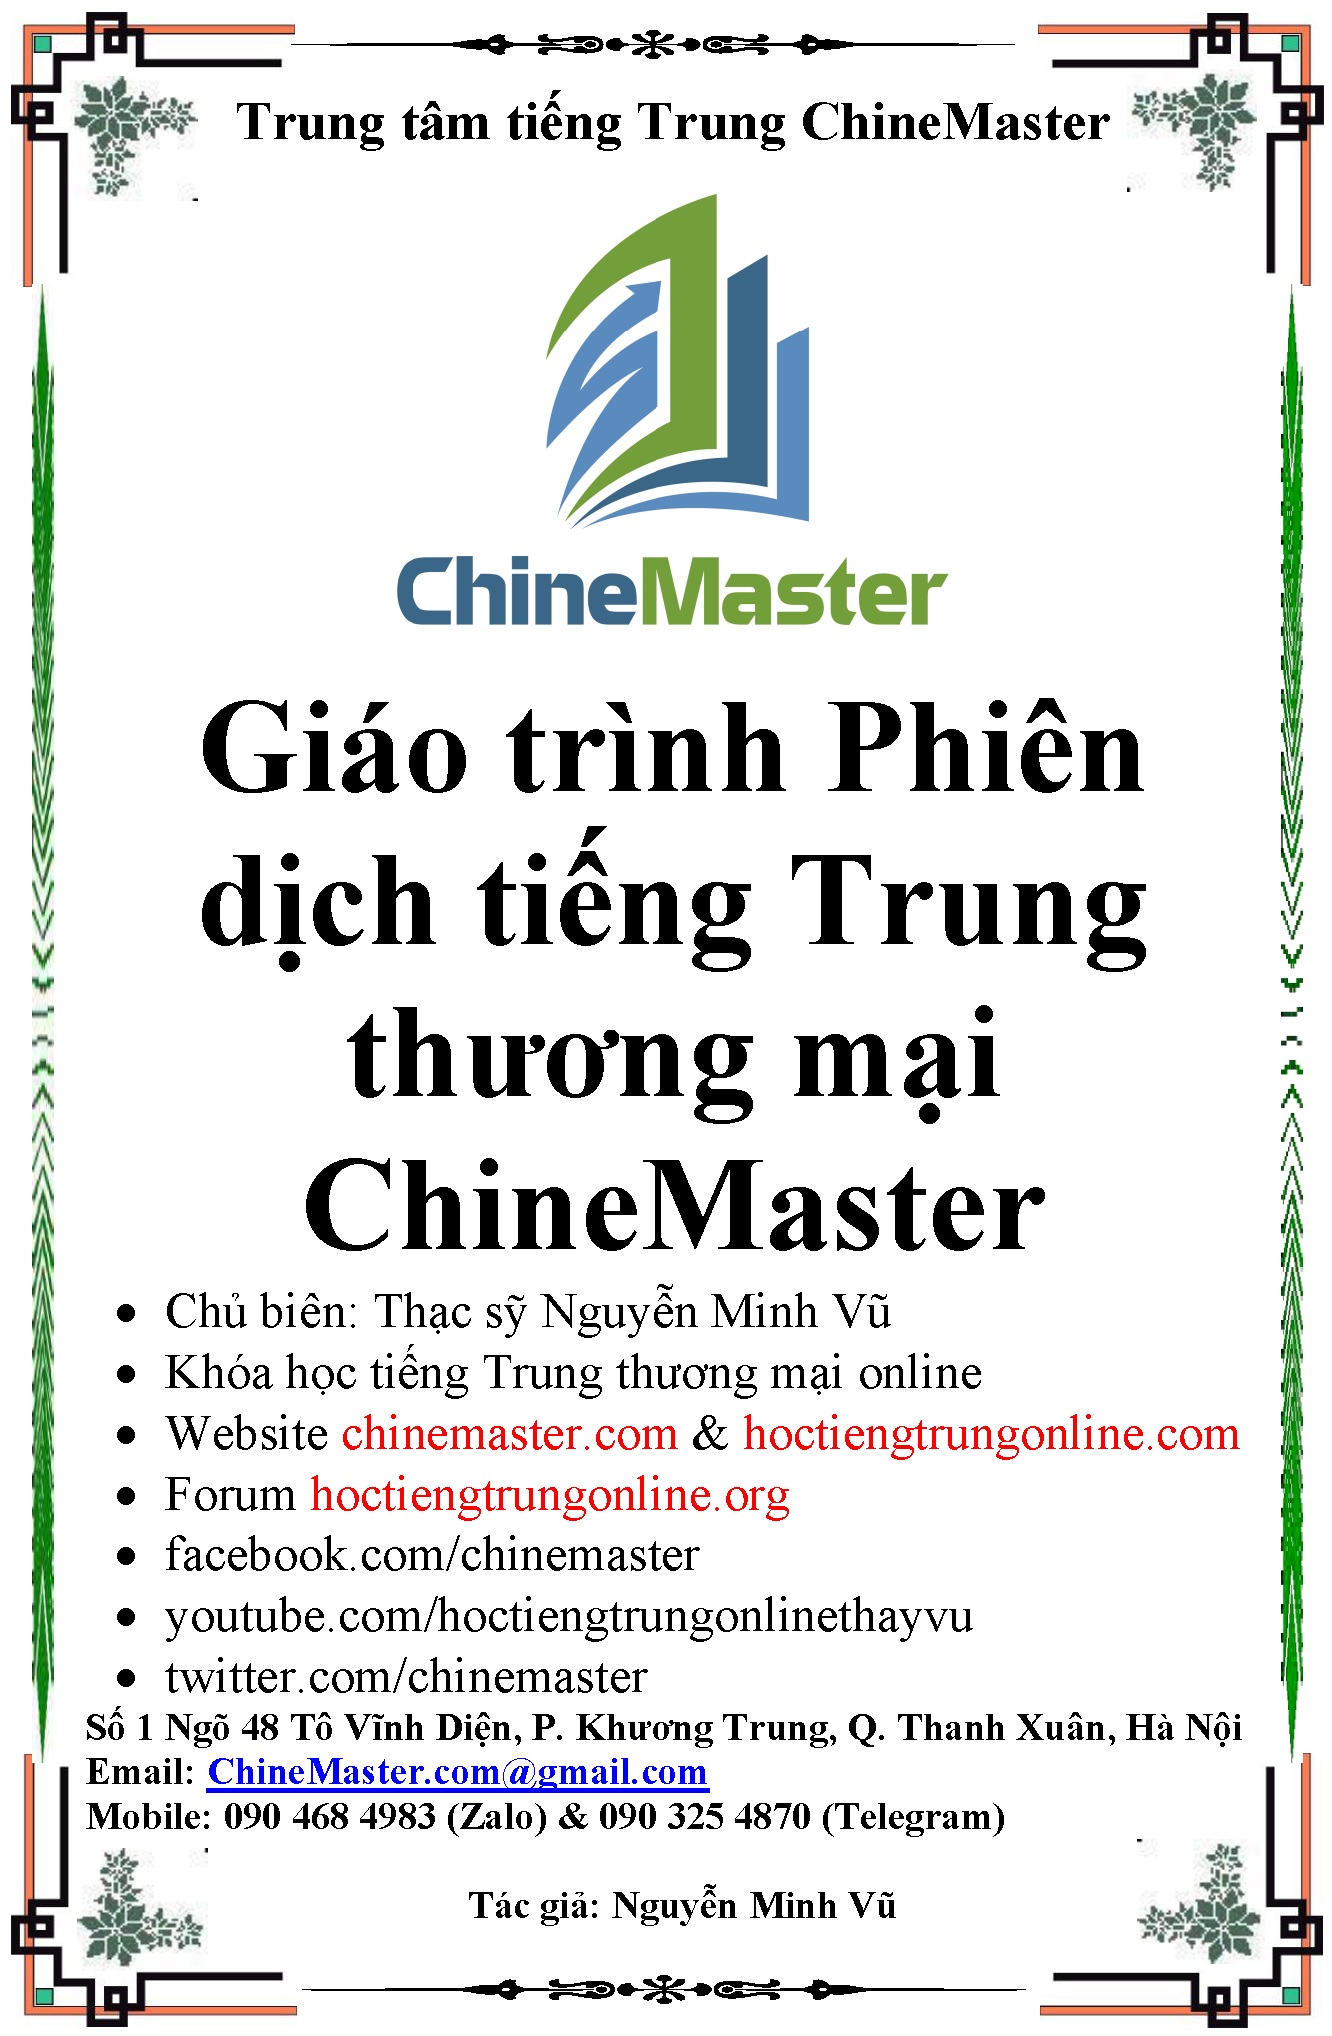 Bộ sách giáo trình phiên dịch tiếng Trung thương mại ChineMaster chính là công cụ và hành trang thiết yếu dành cho các bạn độc giả muốn học tiếng Trung để sau này trở thành người phiên dịch tiếng Trung chuyên nghiệp.